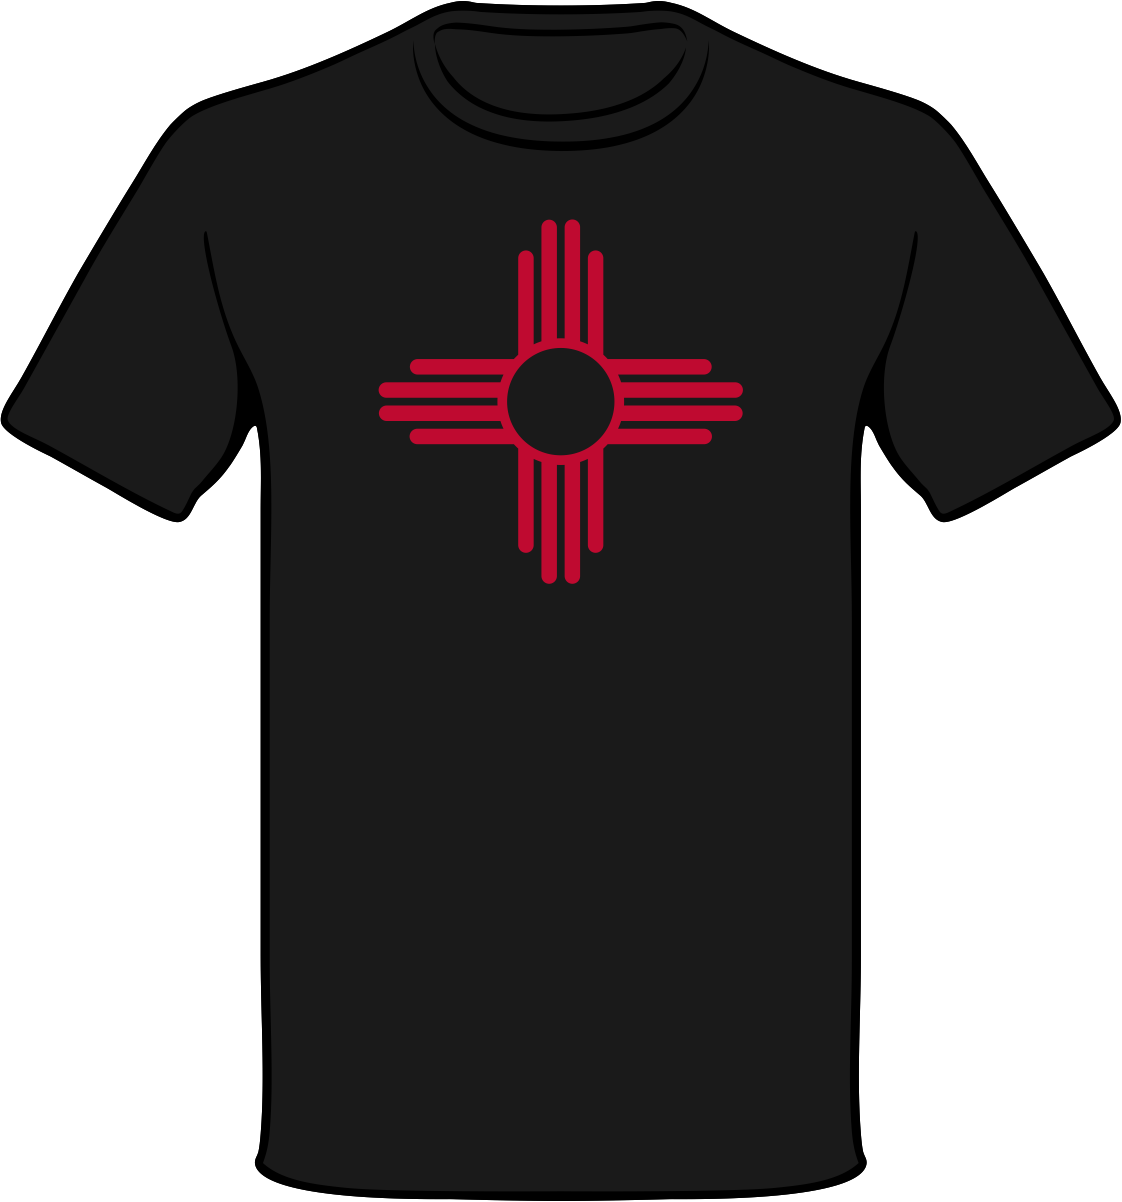 Nm Zia Symbol Shirt - Albuquerque City Flag Note Cards (1122x1202)